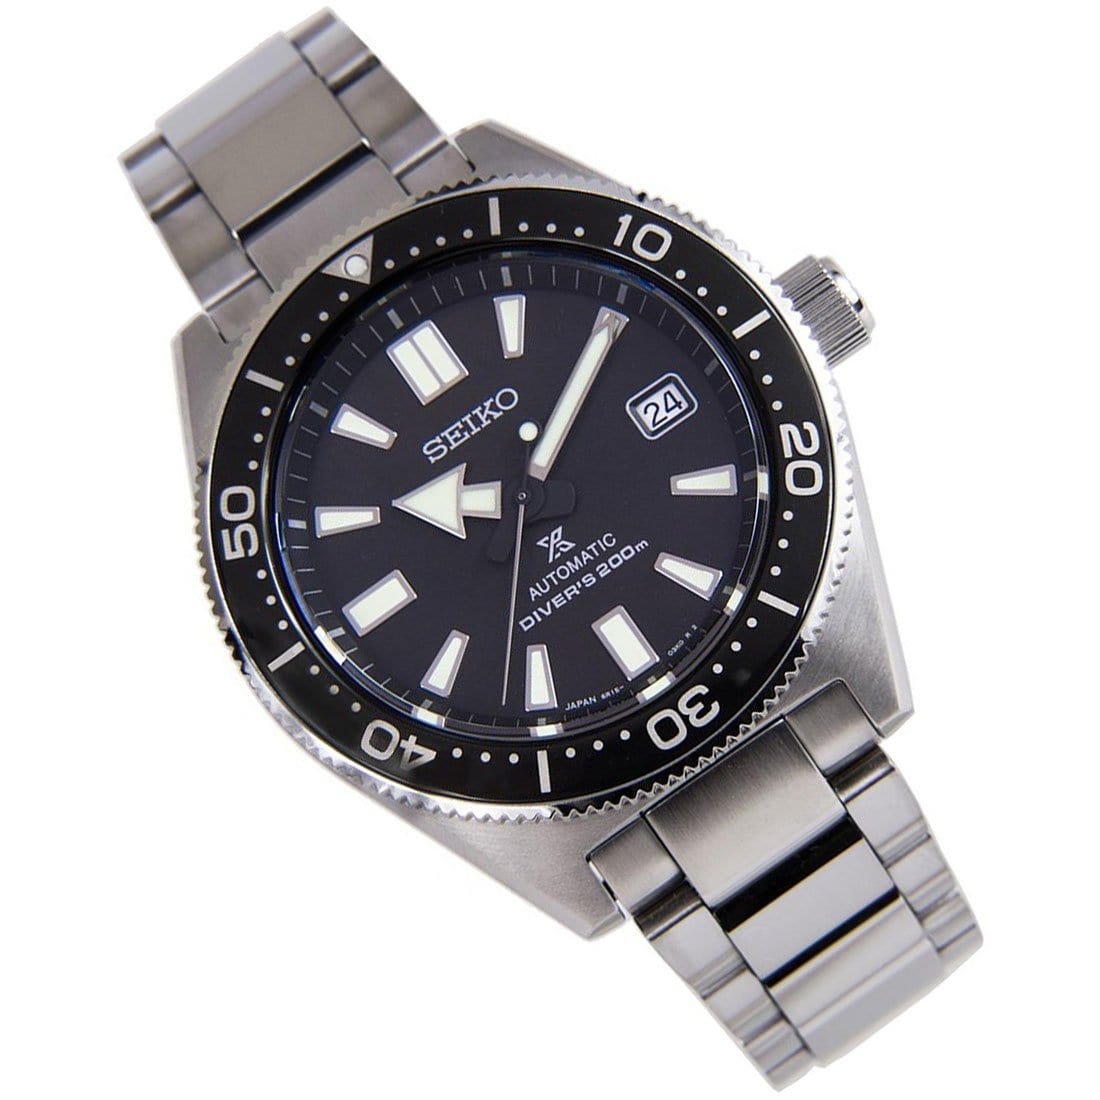 Seiko Prospex Automatic Diver 200M JDM Men's Watch SBDC051